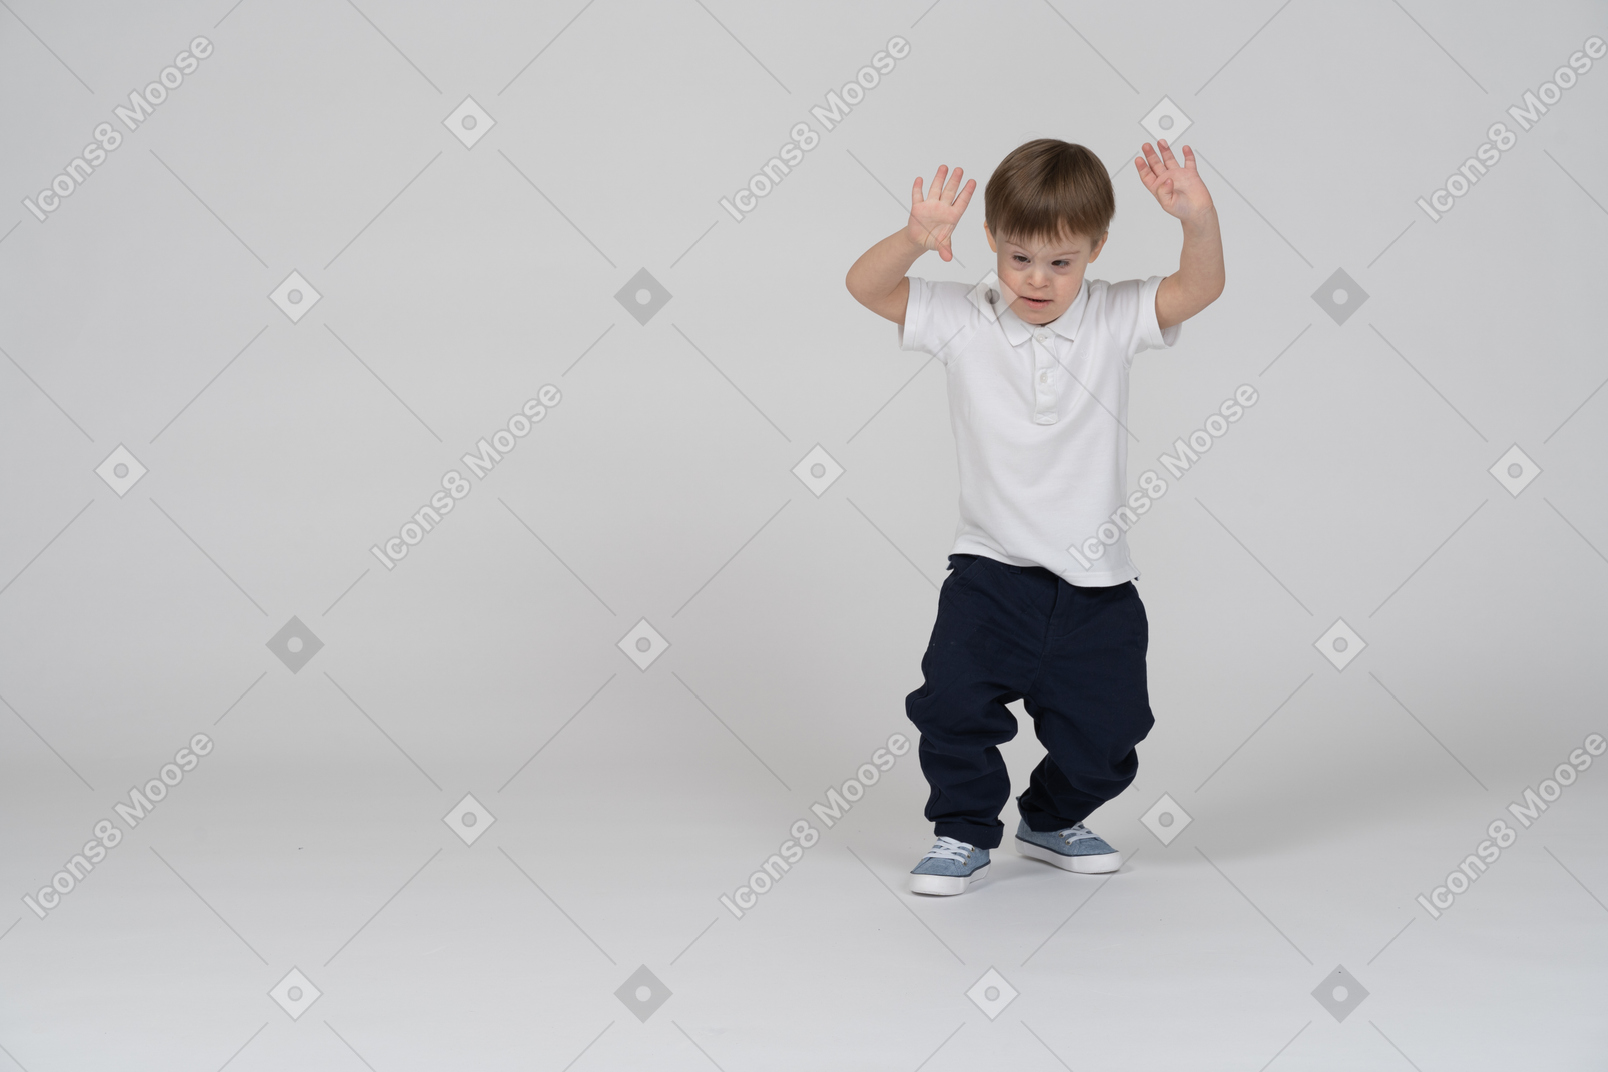 Vista frontal de um menino agachado ligeiramente com as mãos levantadas